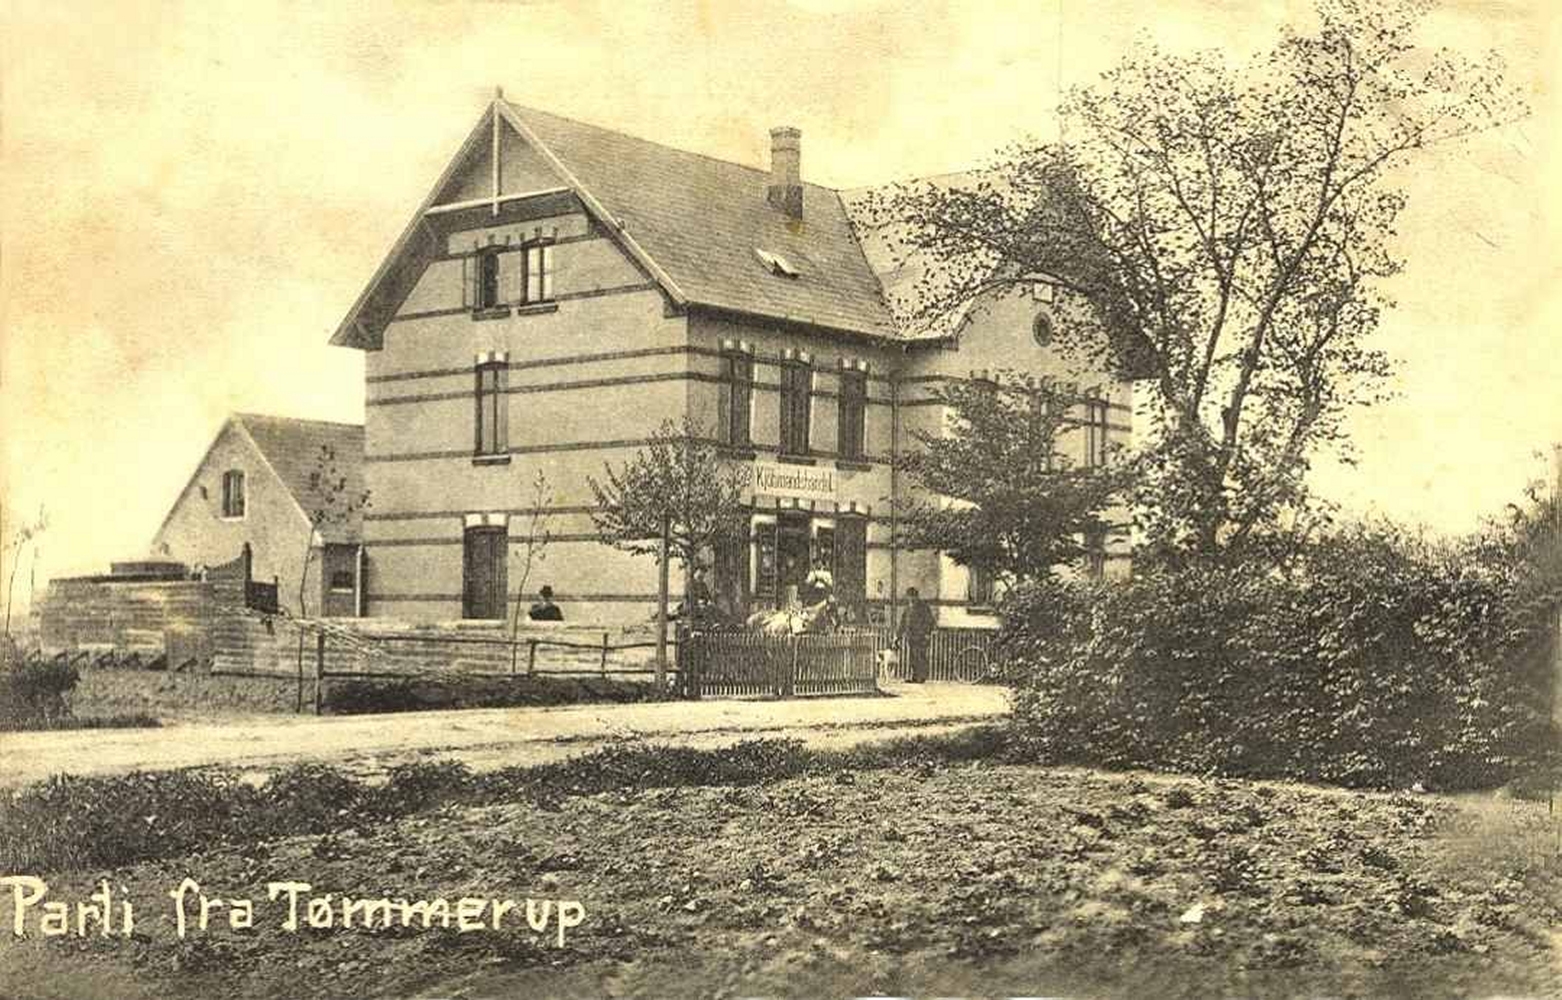 Ejendommen "Enigheds Værn" opført 1898. Postkort fra omkring 1909. Foto: udlånt af Tårnby Kommunes Stads- og Lokalarkiv.